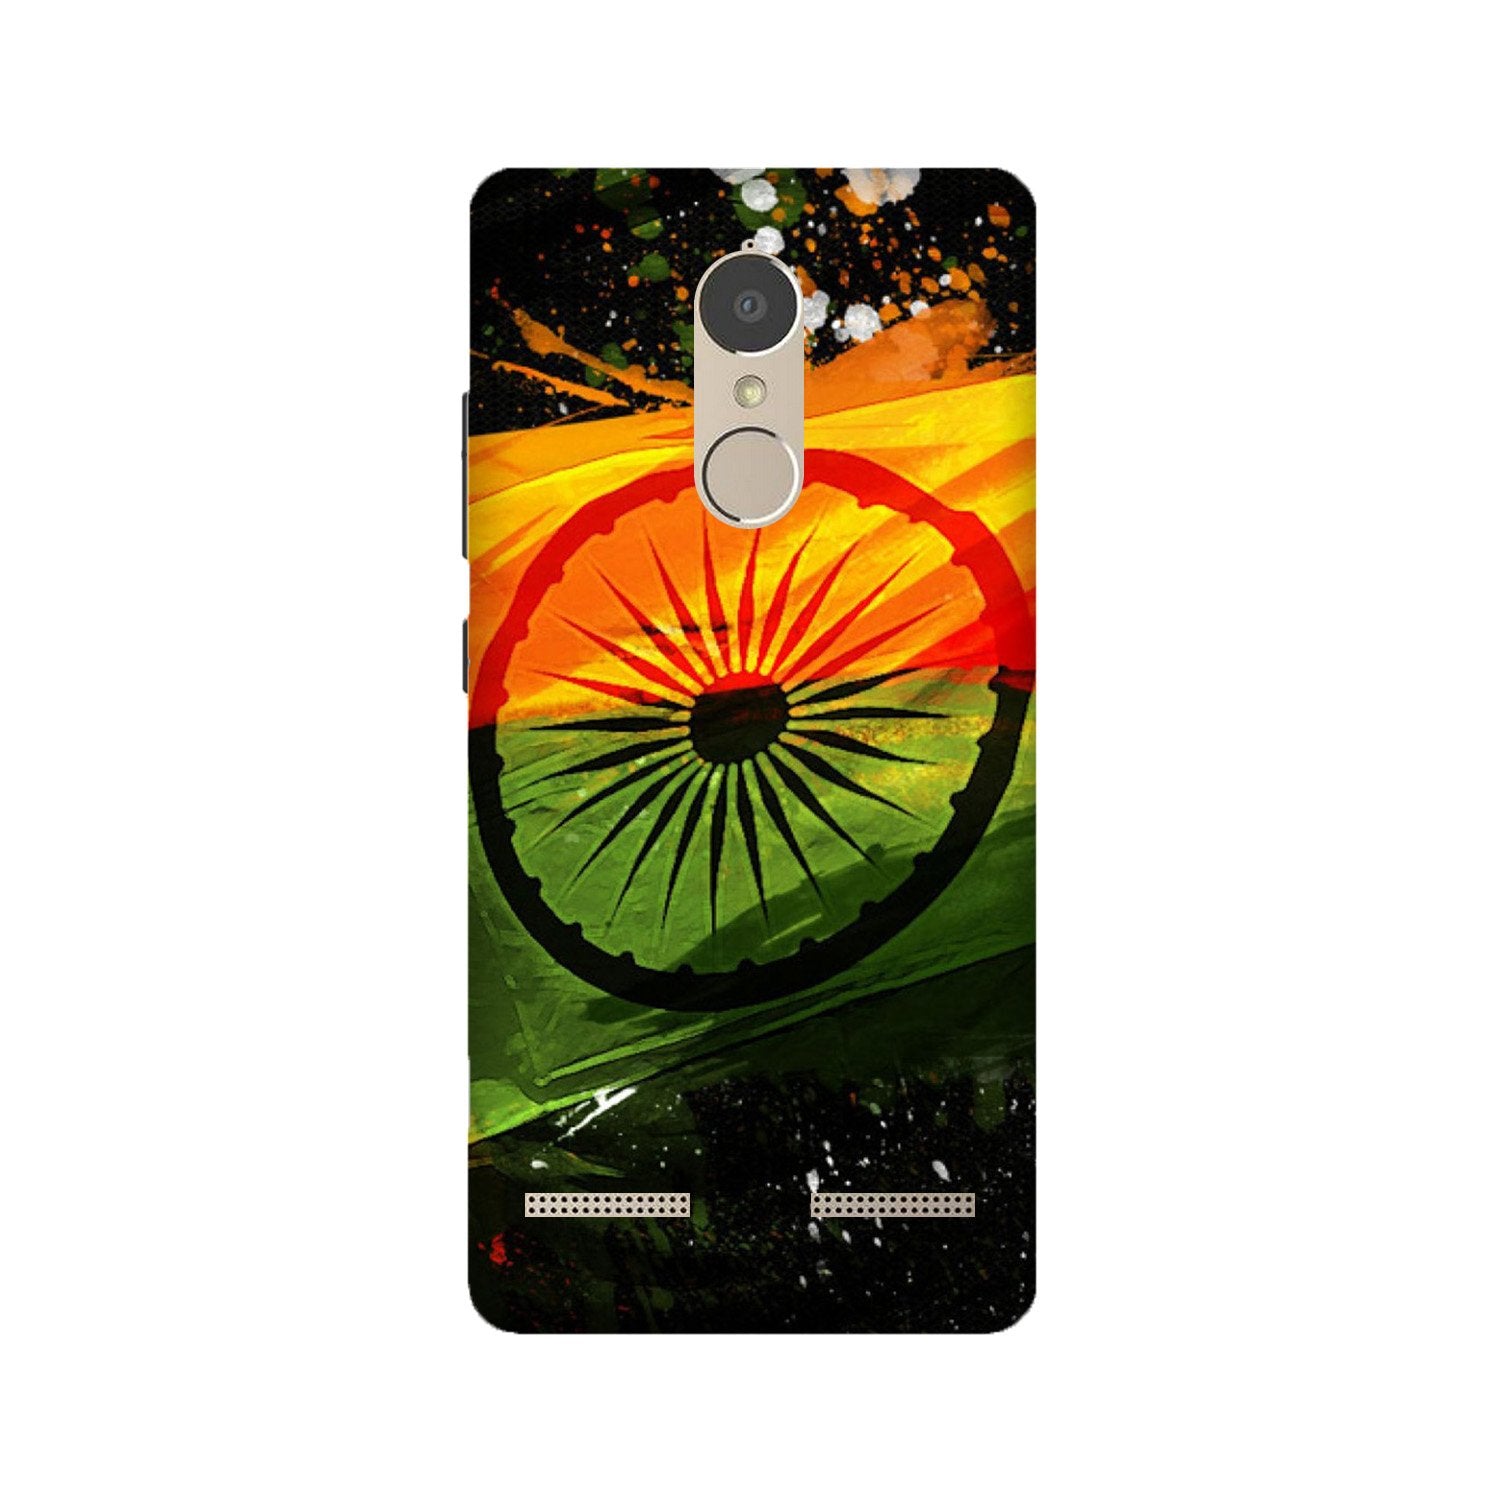 Indian Flag Case for Lenovo K6 / K6 Power(Design - 137)